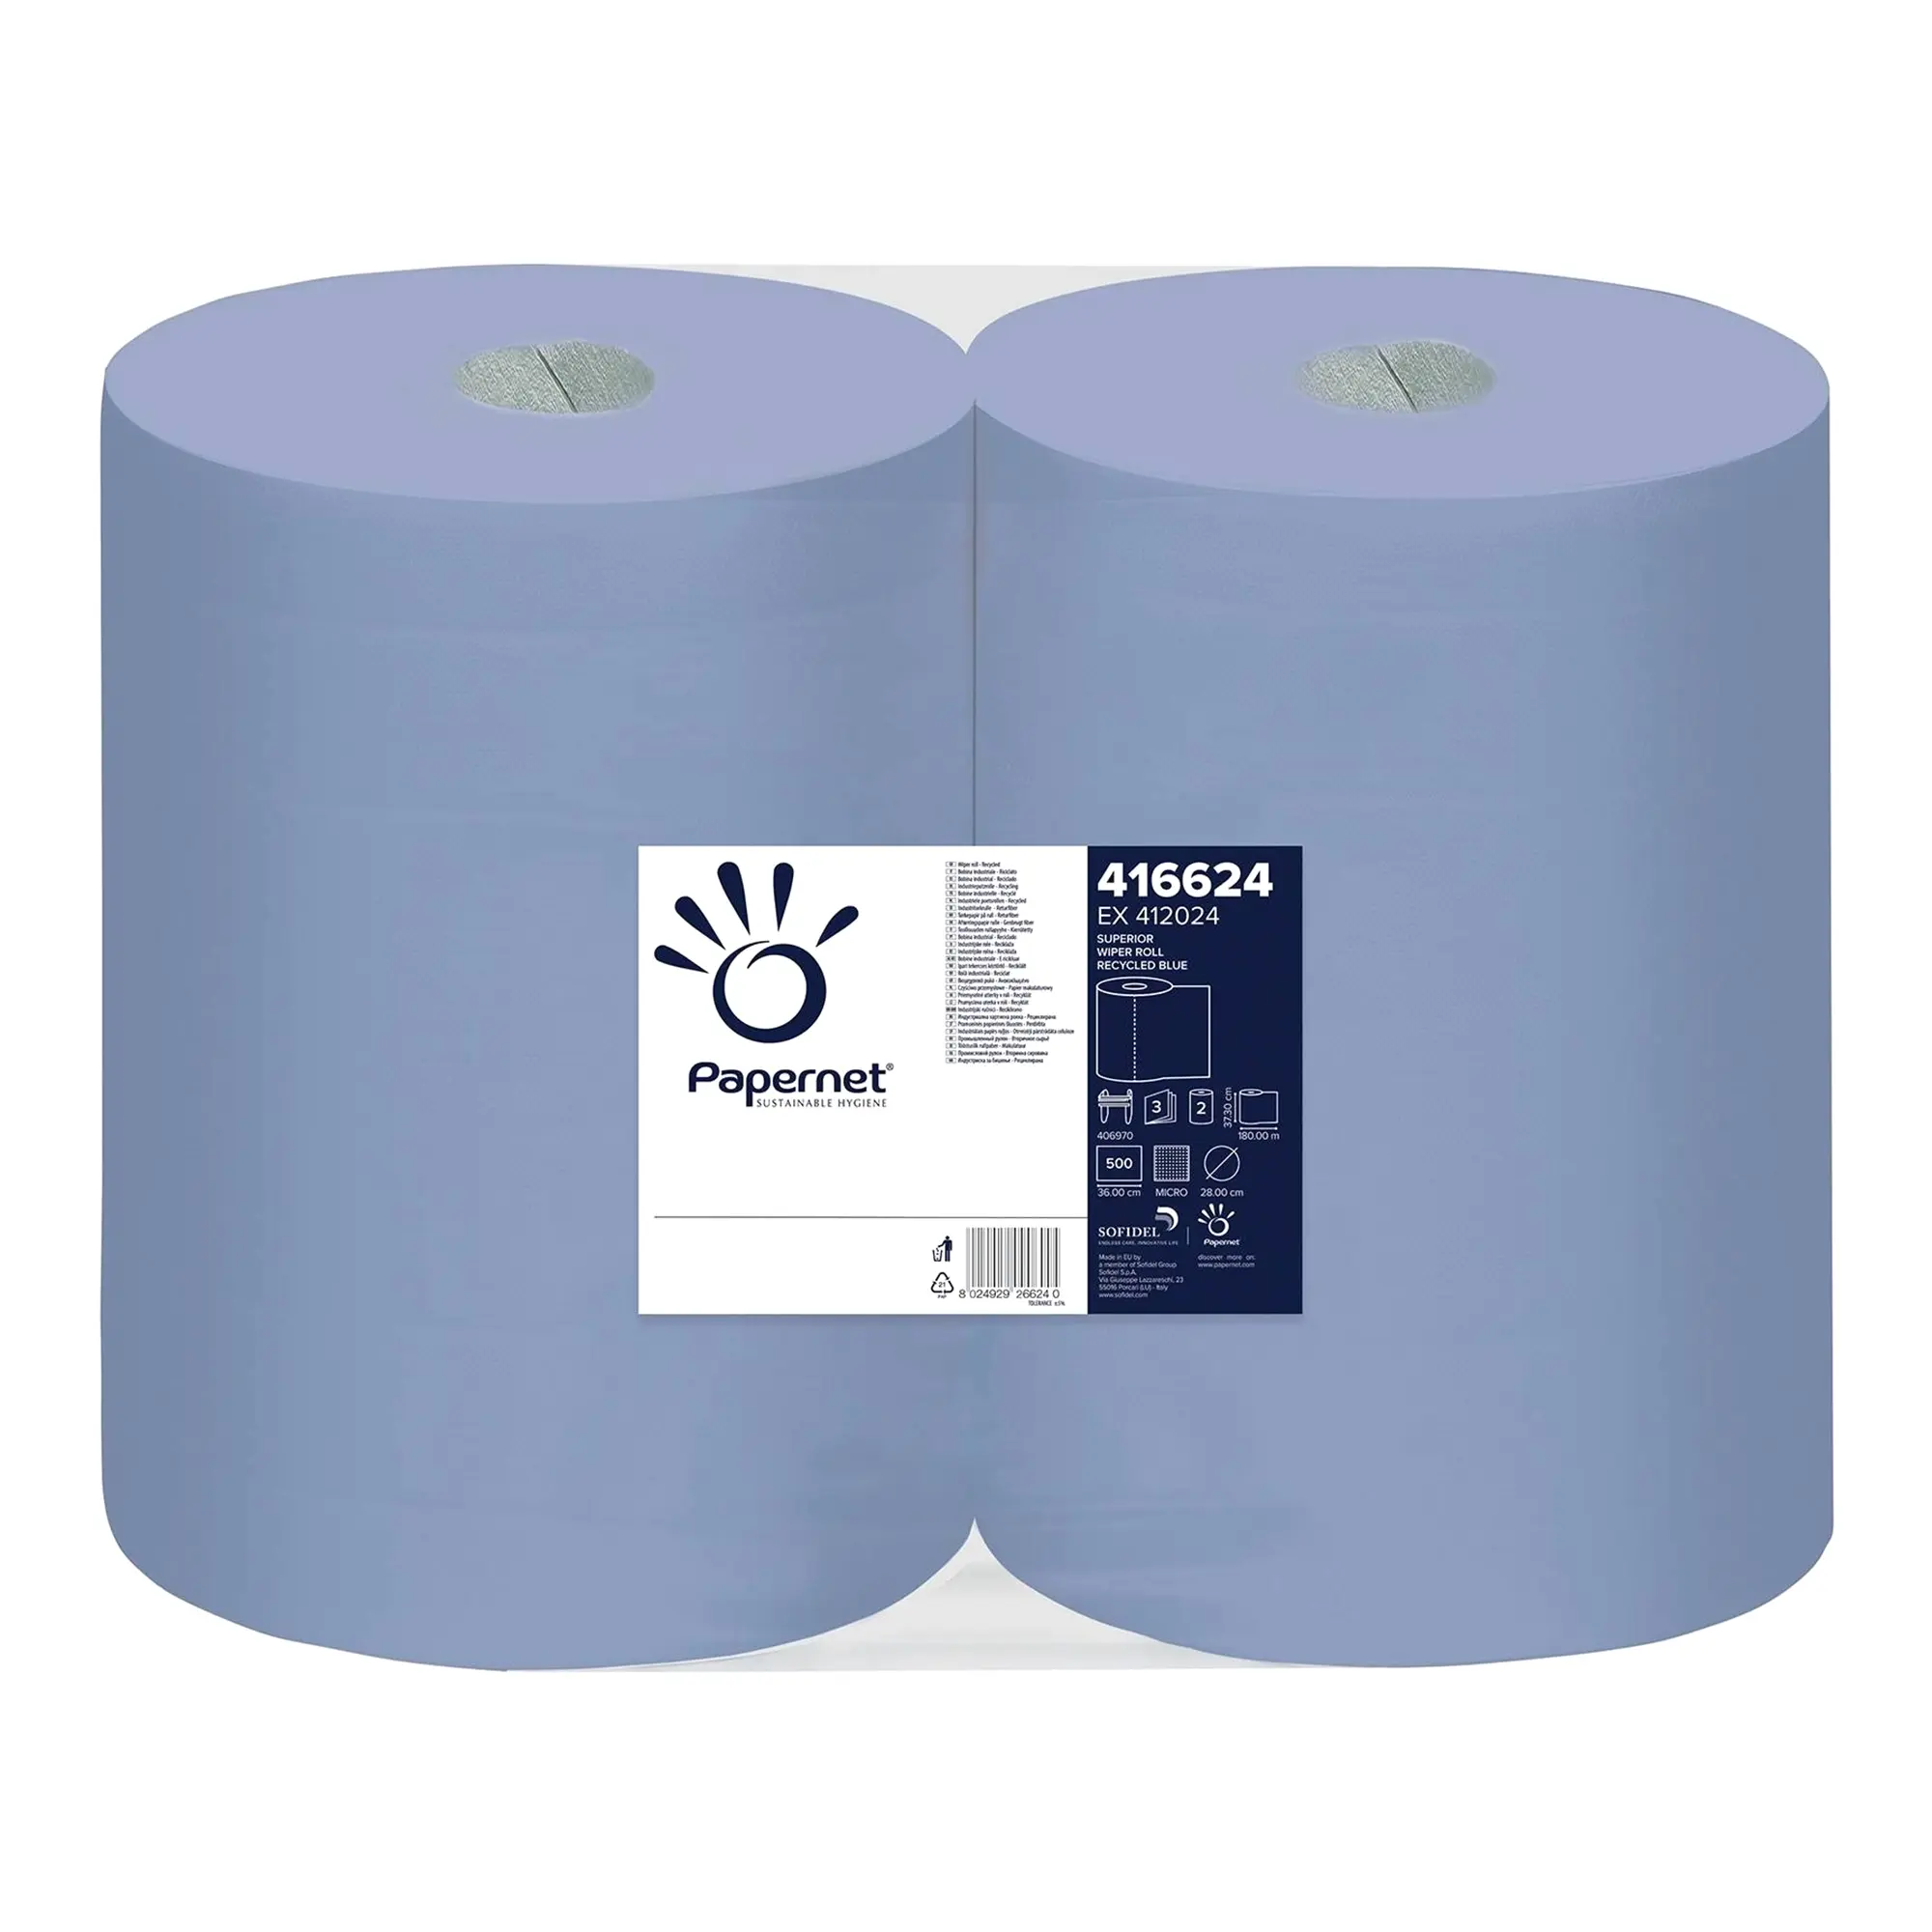 Papernet Industrieputztuchrolle blau 3-lagig, 37,3 cm breit, 500 Tücher